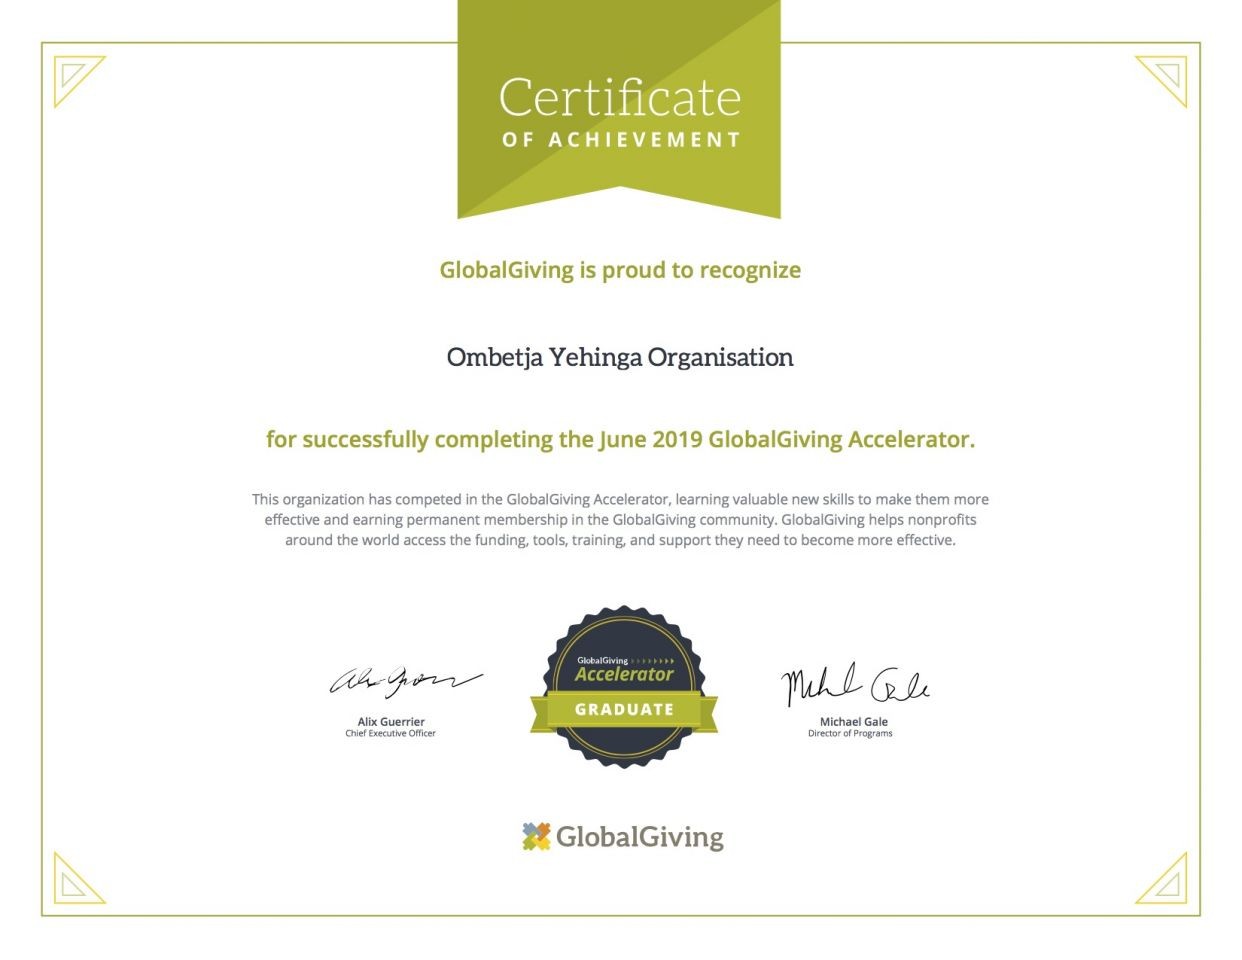 OYO_certificate